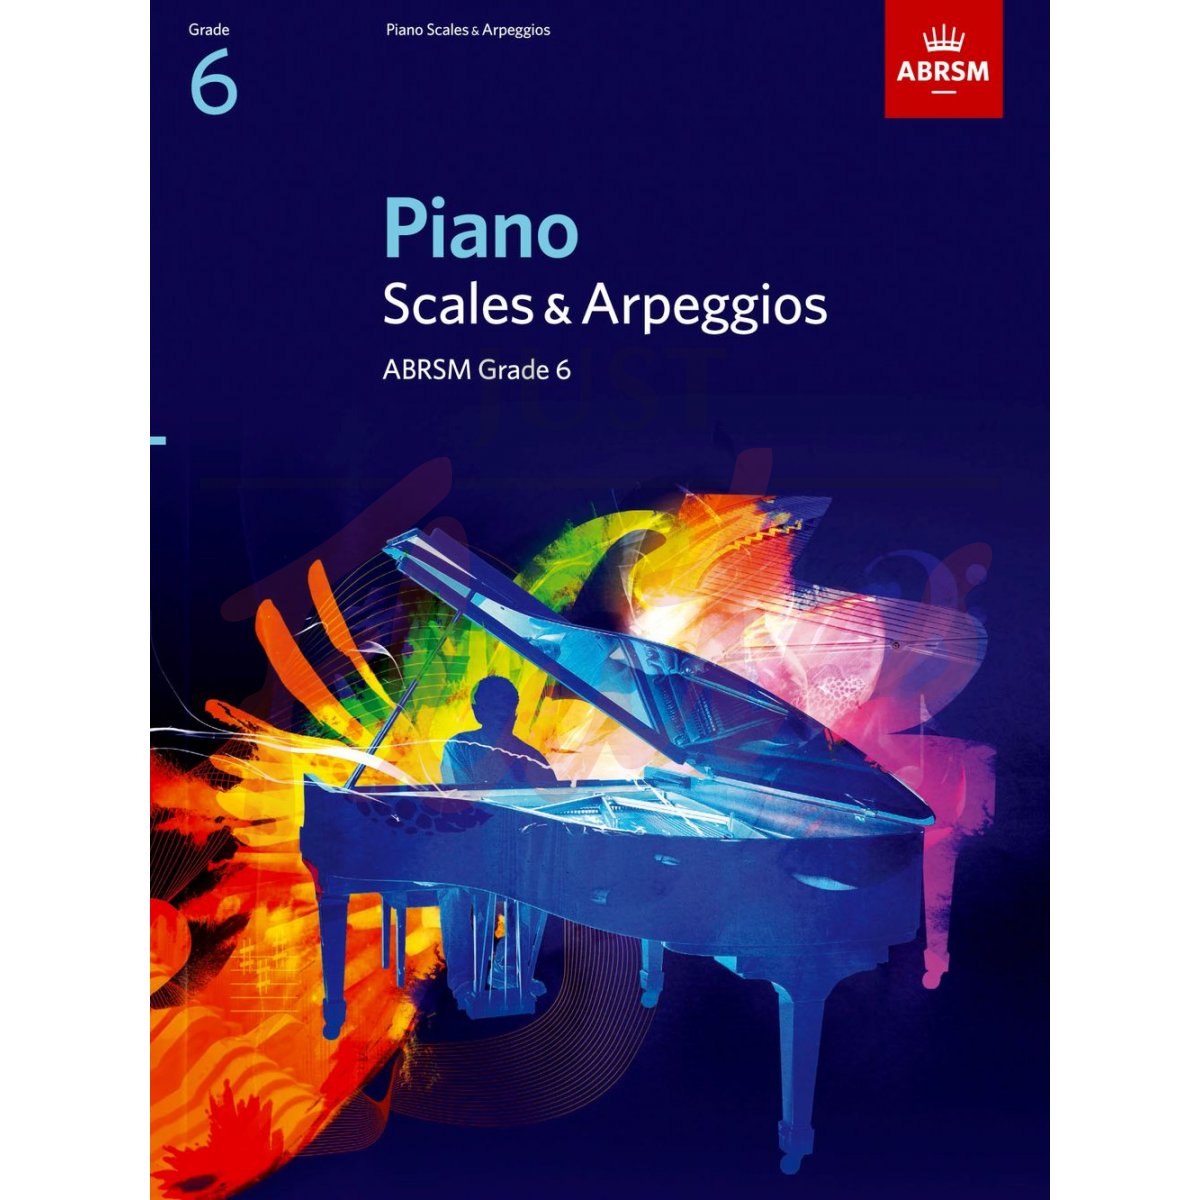 Piano Scales and Arpeggios Grade 6 (2009 to 2019)